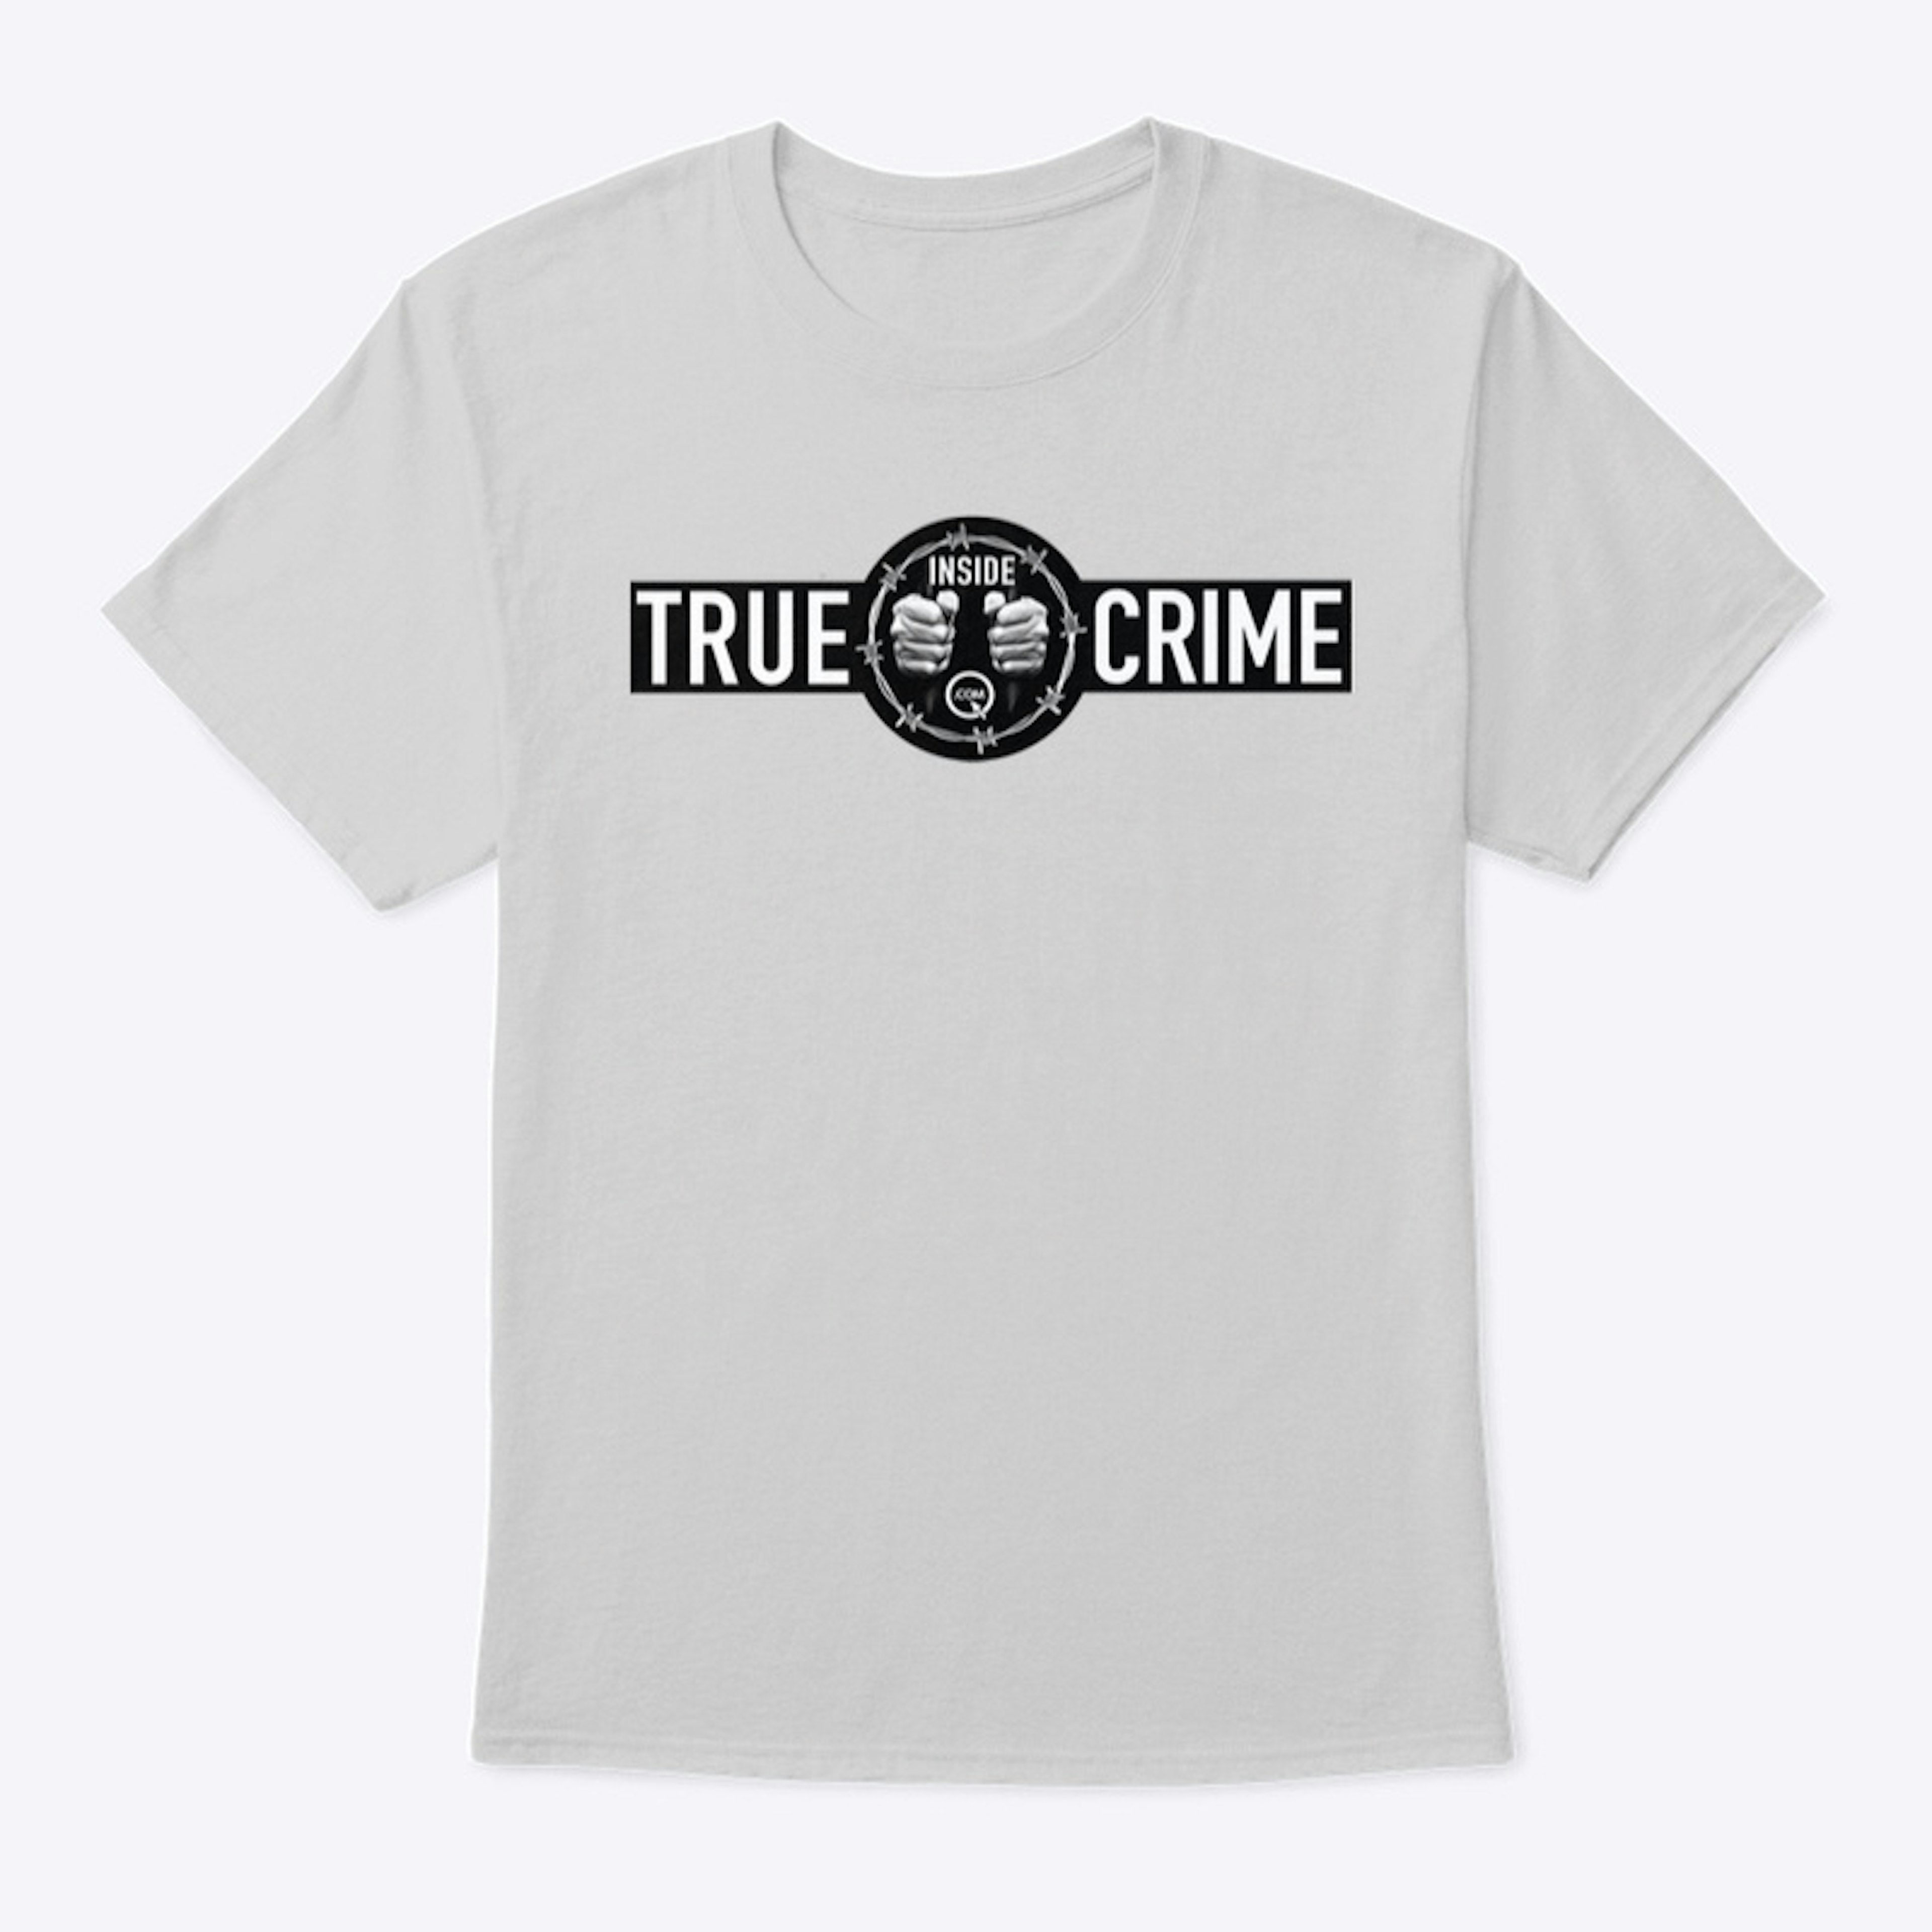 Inside true crime.com tee